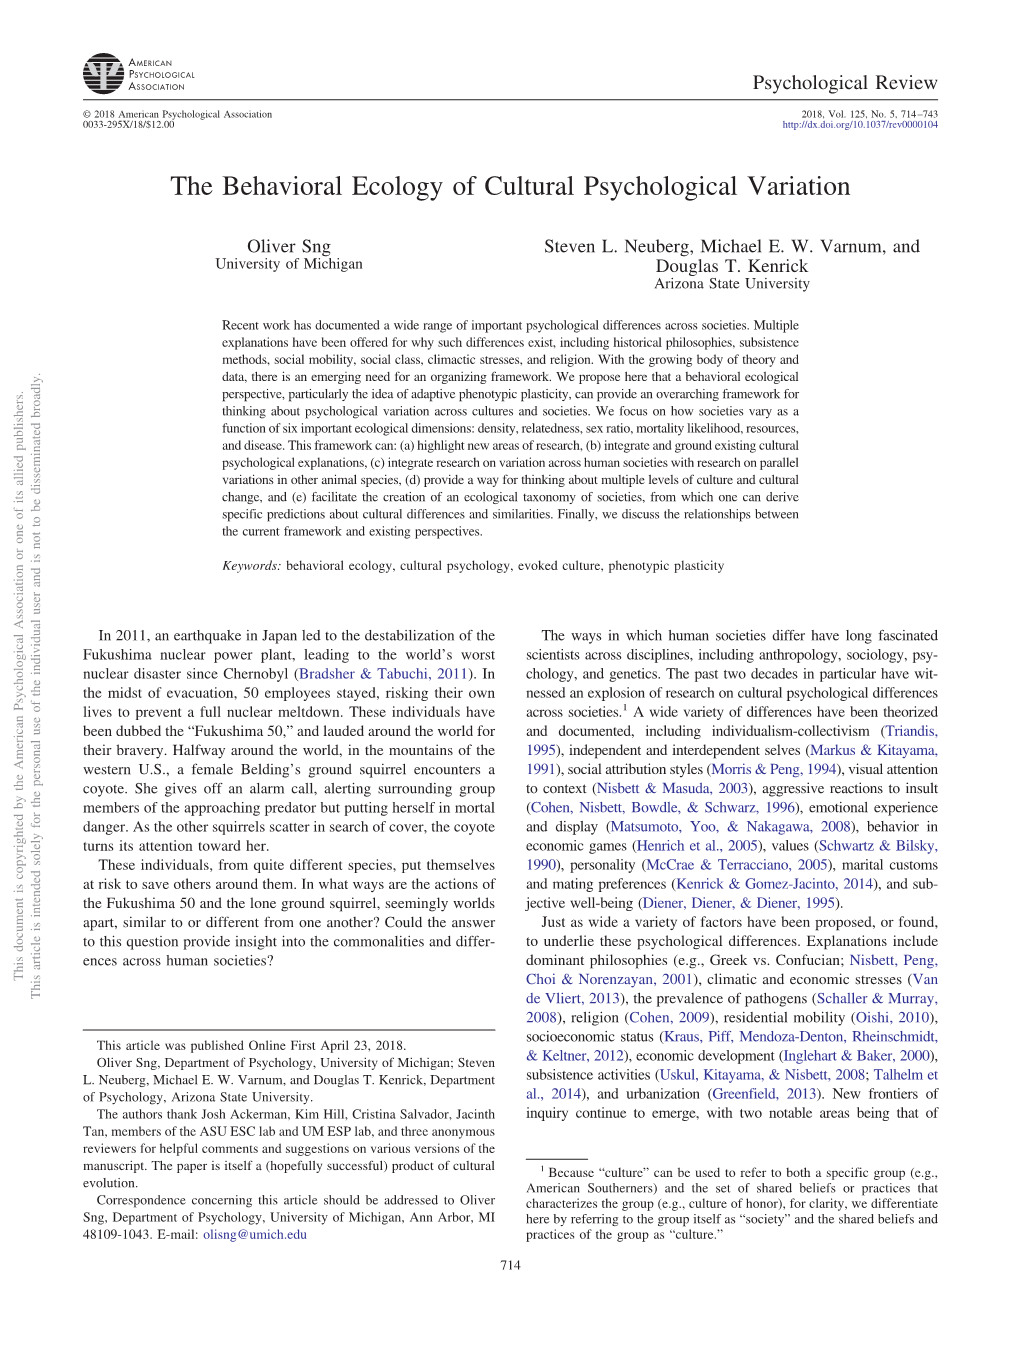 The Behavioral Ecology of Cultural Psychological Variation